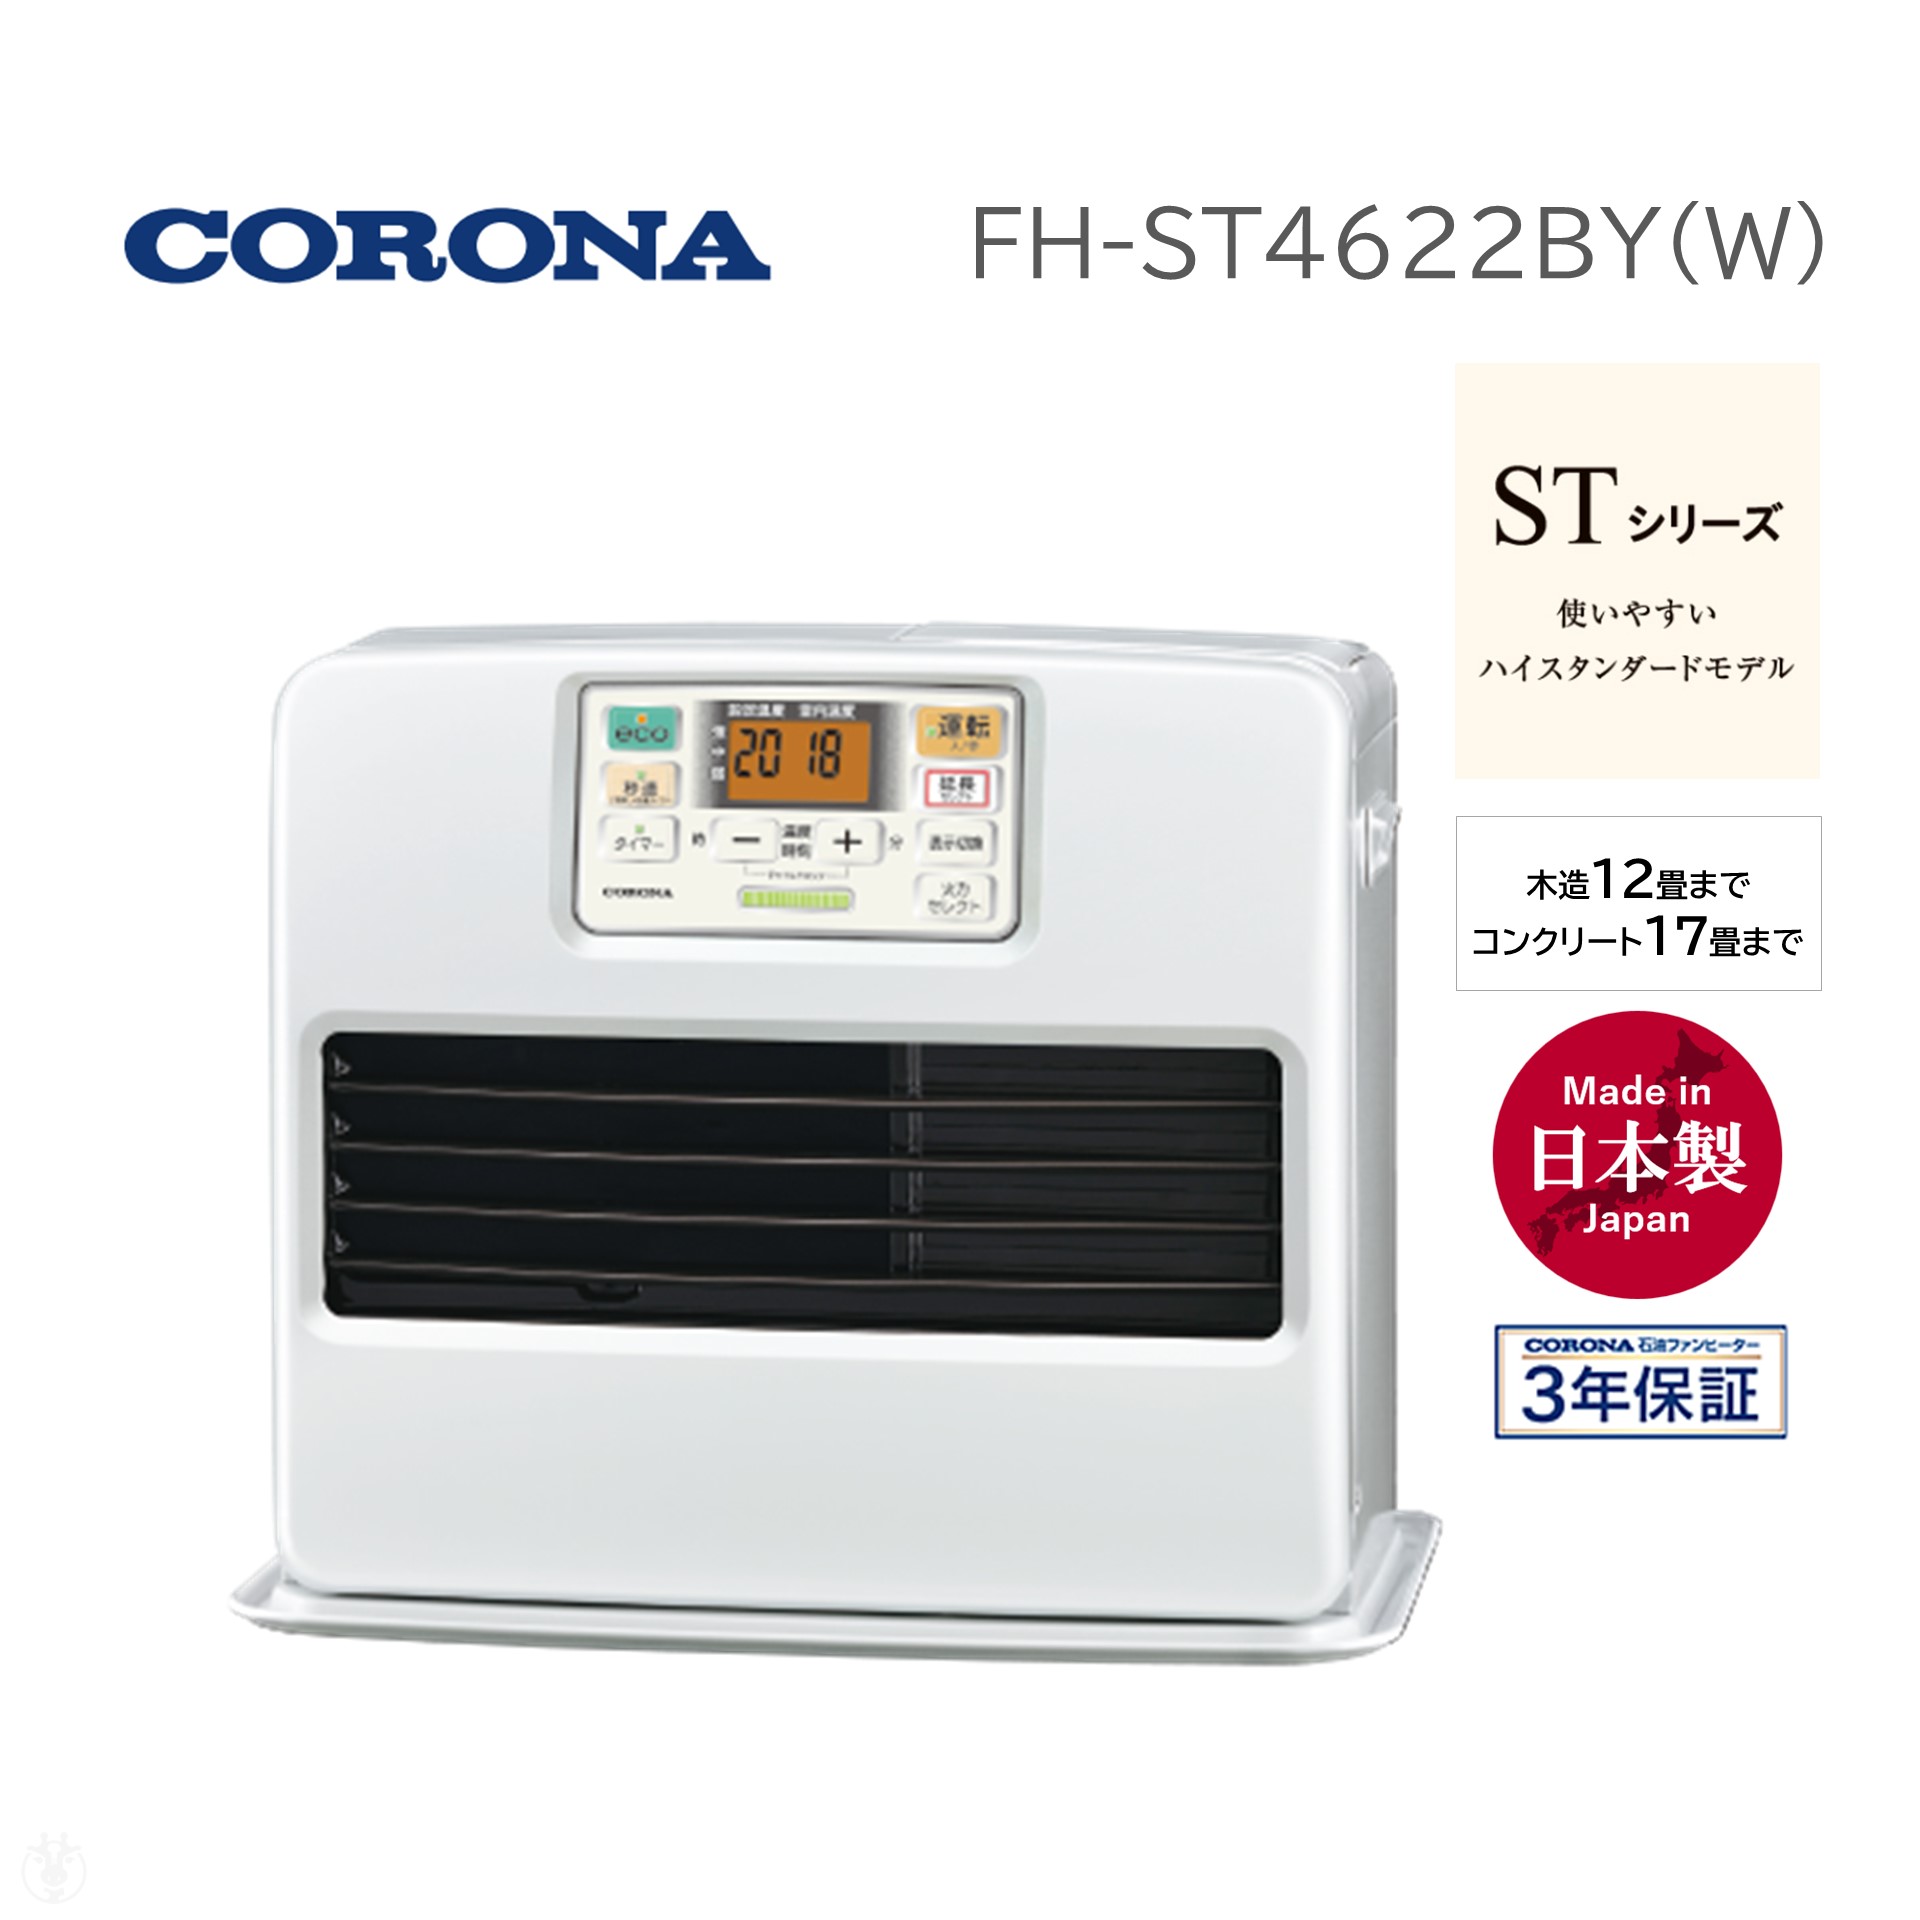 コロナ CORONA FH-ST4622BY (W) パールホワイト STシリーズ 石油ファン 